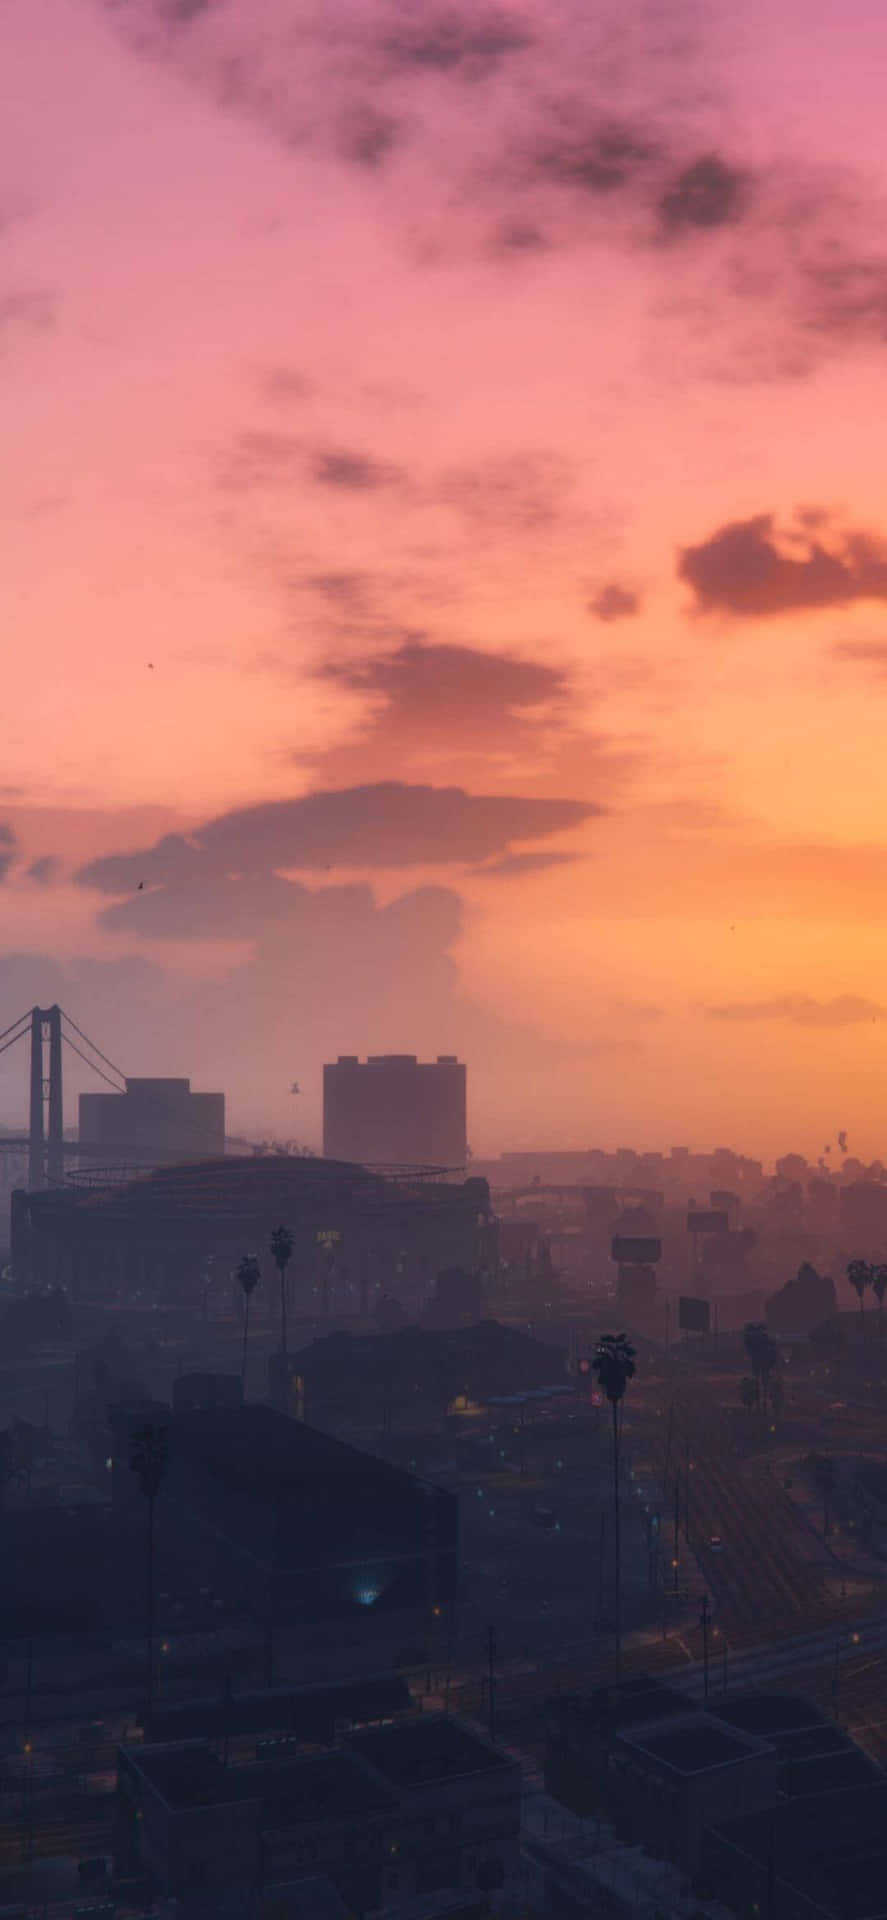 Iphonexs Max Bakgrundsbild Med Solnedgångsscenen Från Grand Theft Auto V.